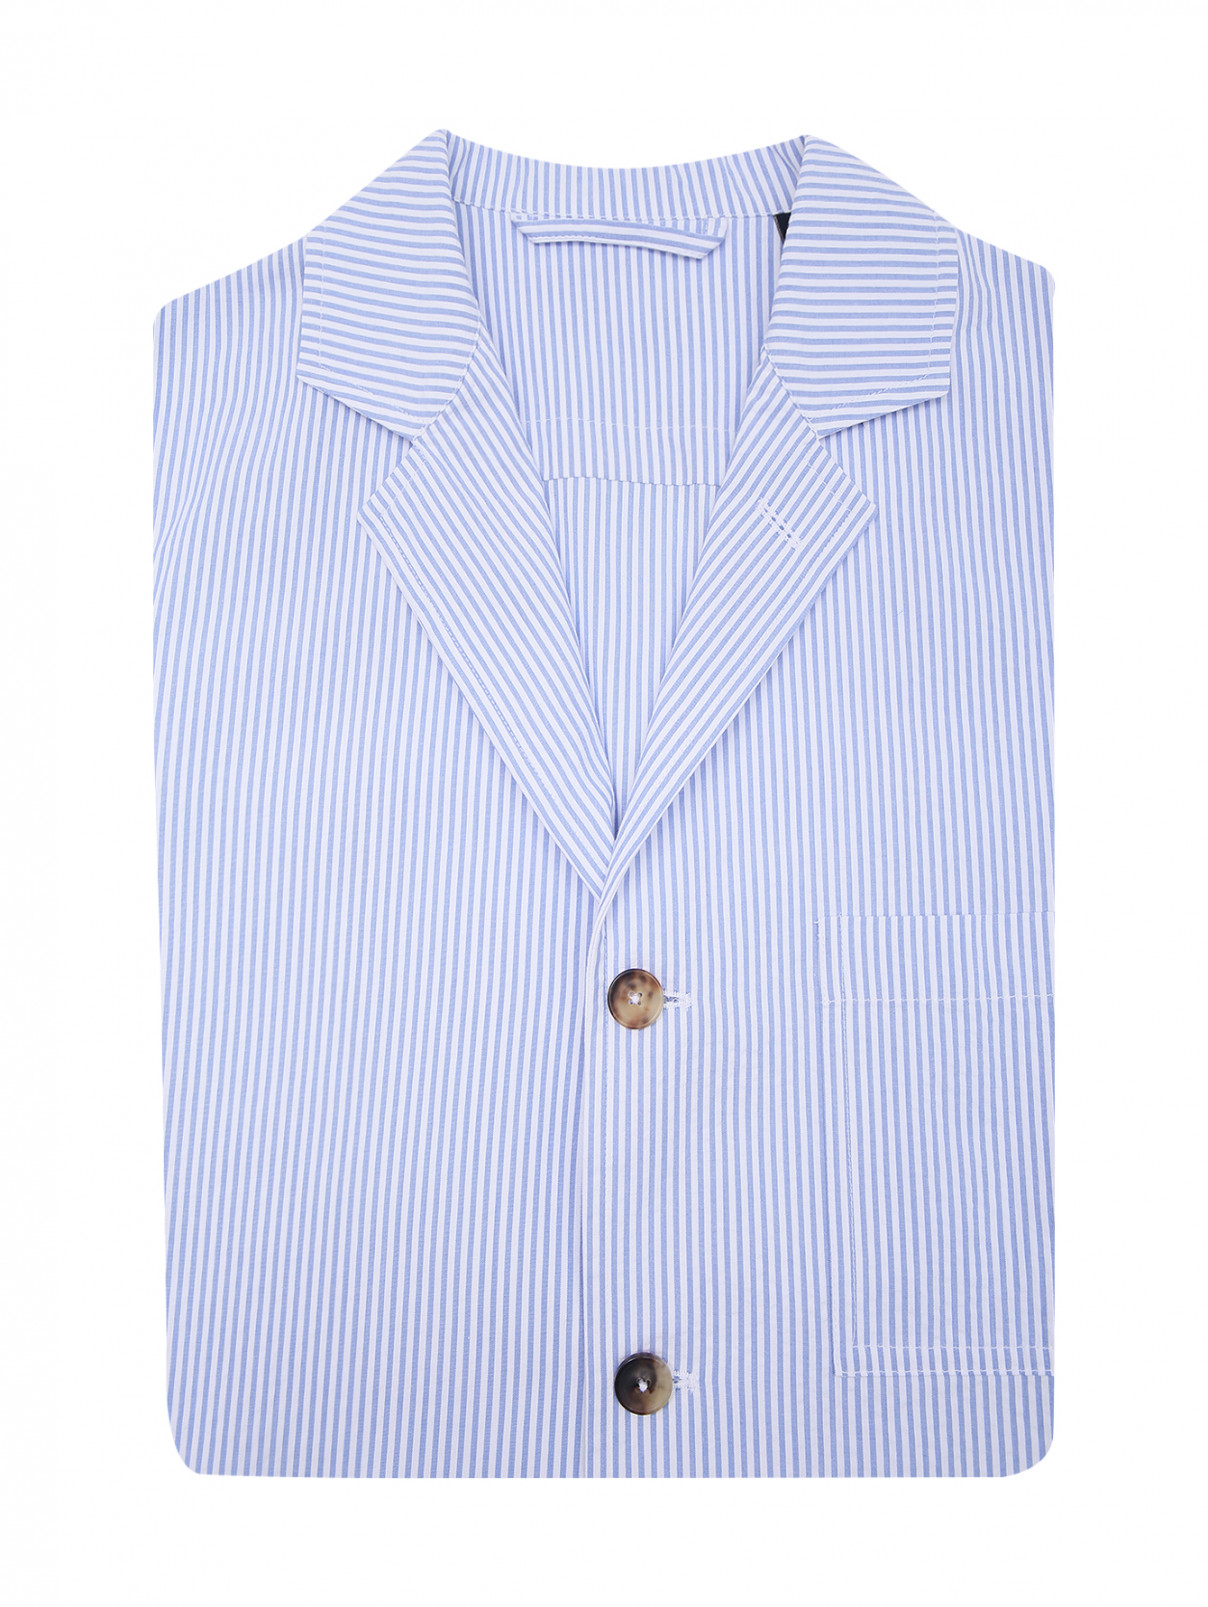 Рубашка из хлопка с узором полоска LARDINI  –  Общий вид  – Цвет:  Синий